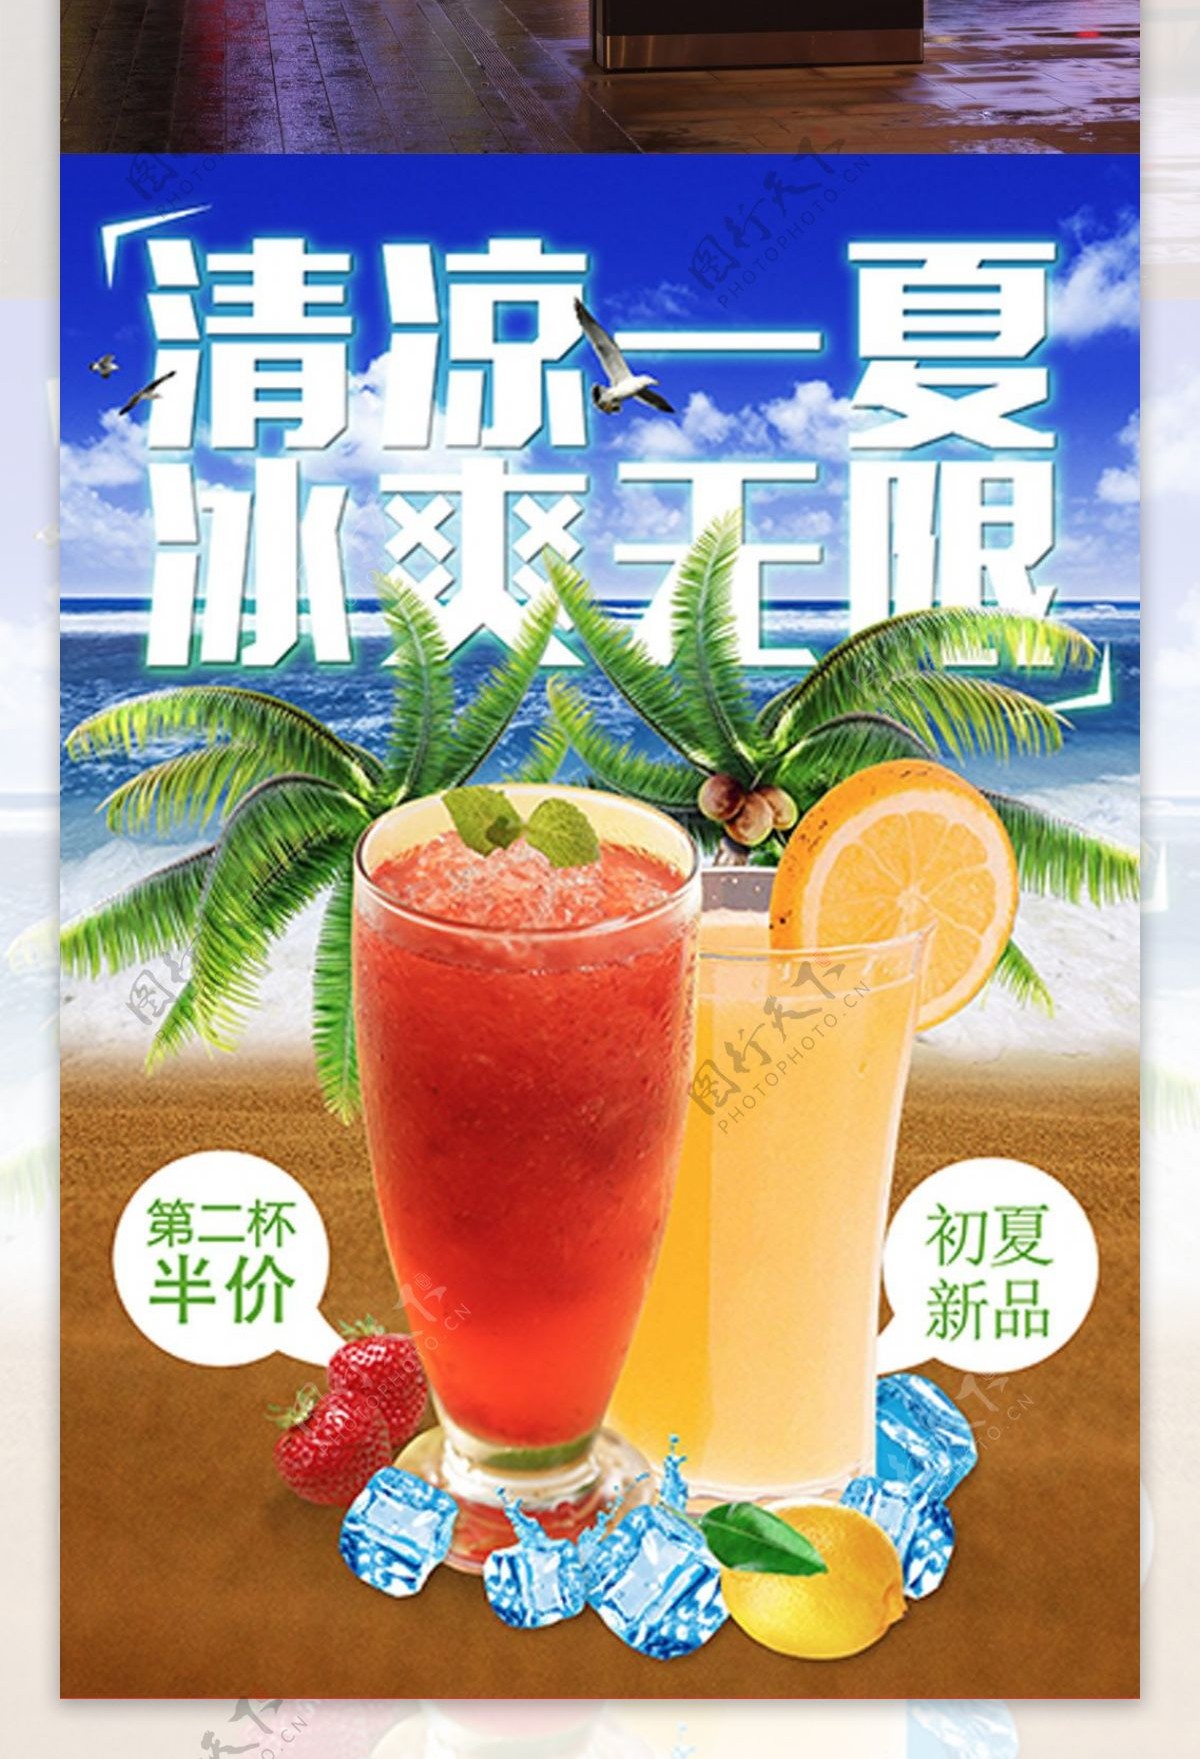 夏季促销冷饮店促销第二杯半价果汁海报